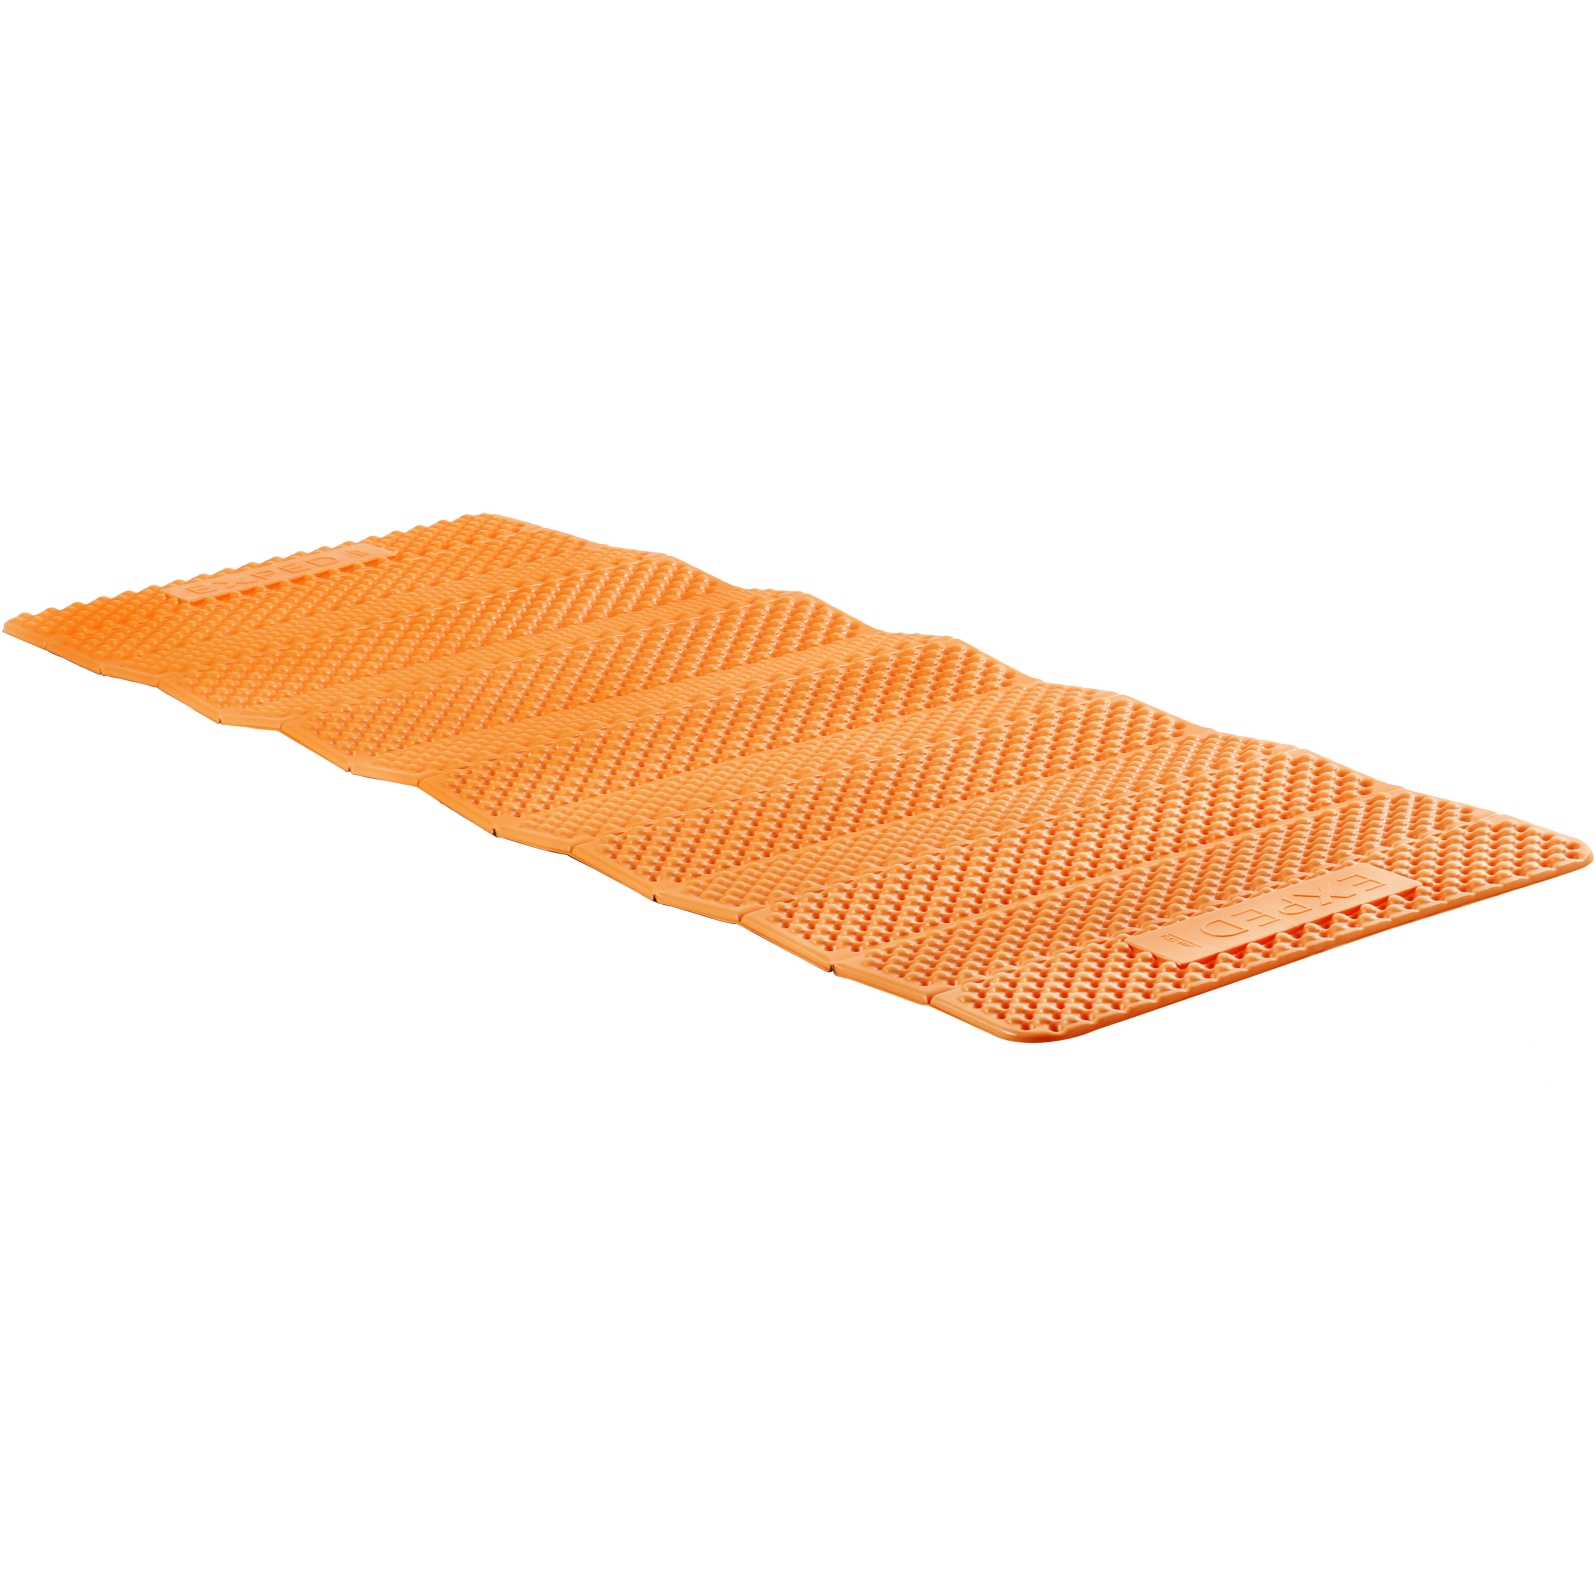 Produktbild von Exped FlexMat Isomatte - LW - charcoal grey/orange